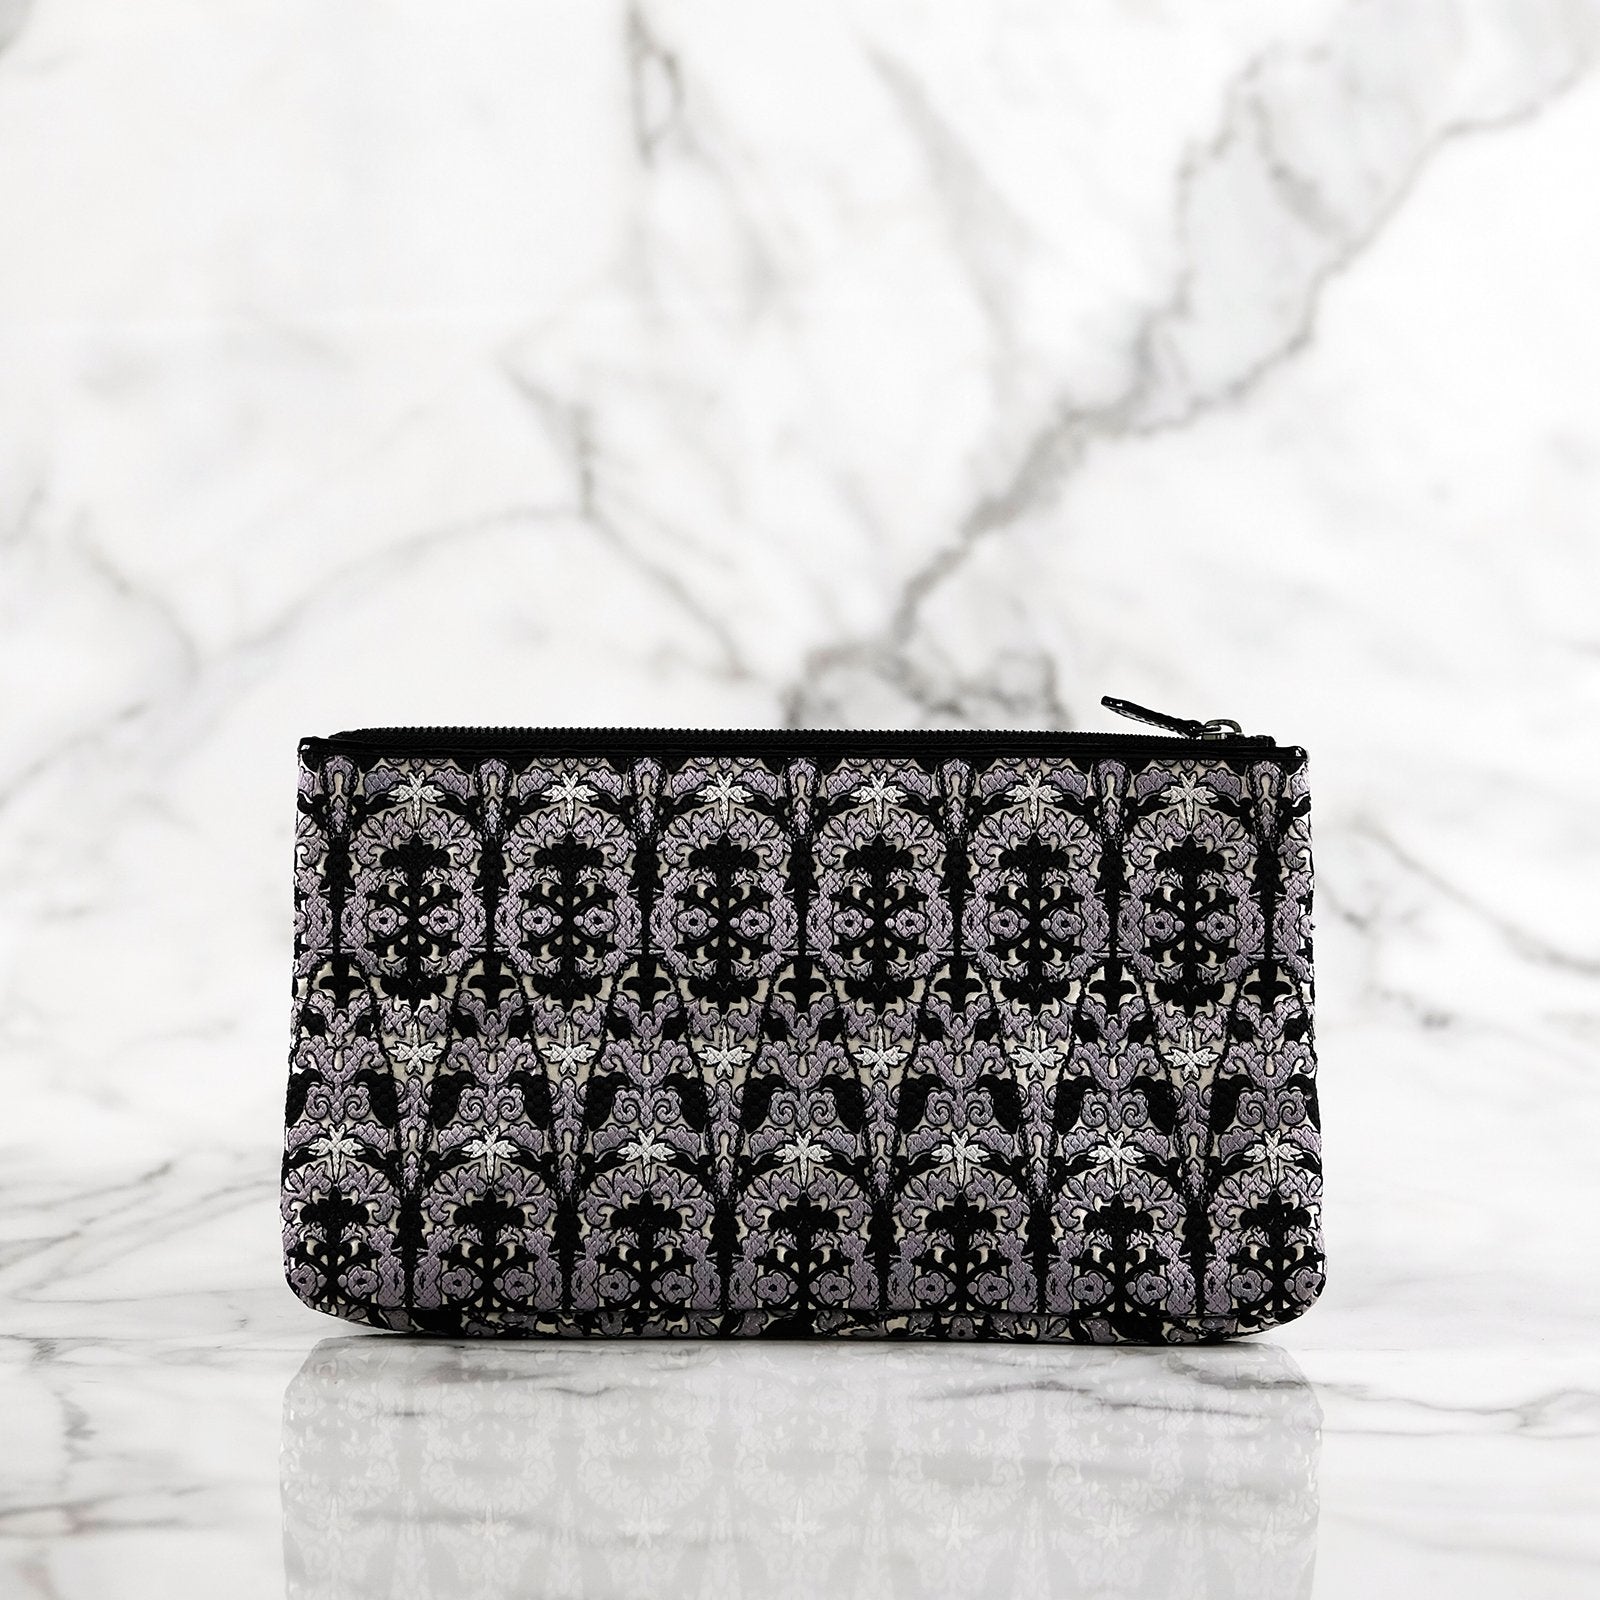 Elsie monochrome fractal patterned and embroidered silver handbag